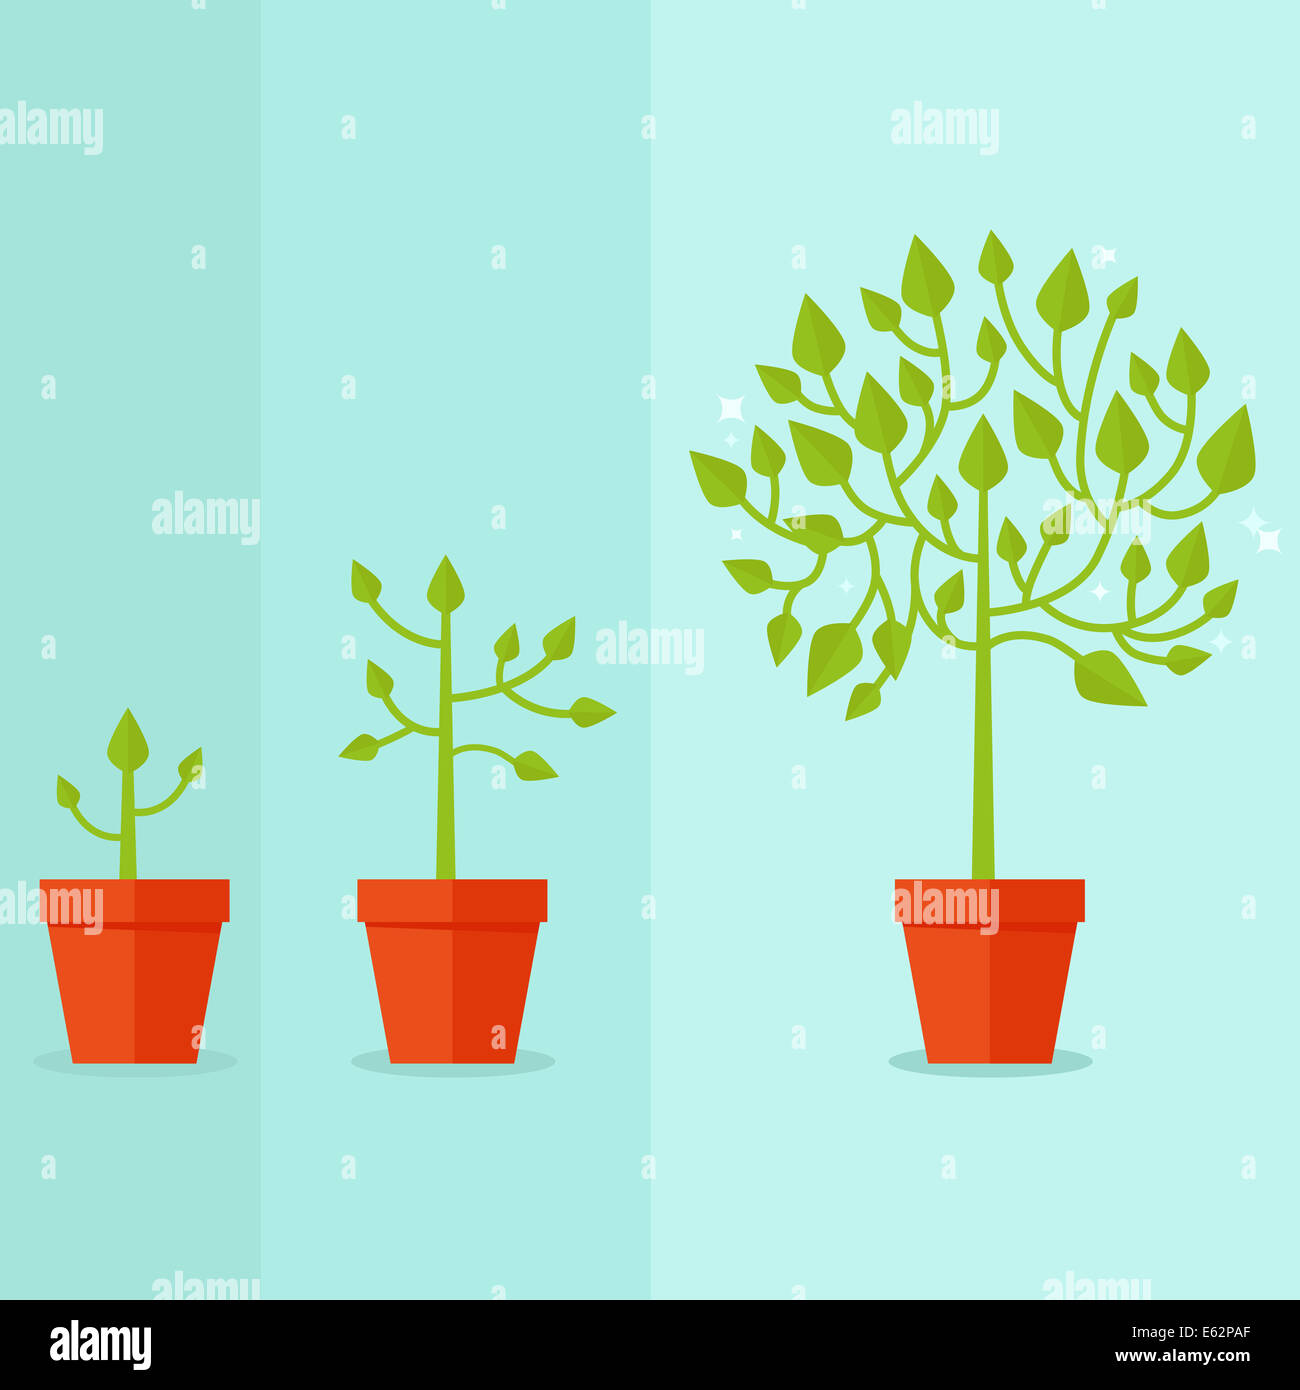 Concepto de crecimiento - infográfico en estilo plano Foto de stock